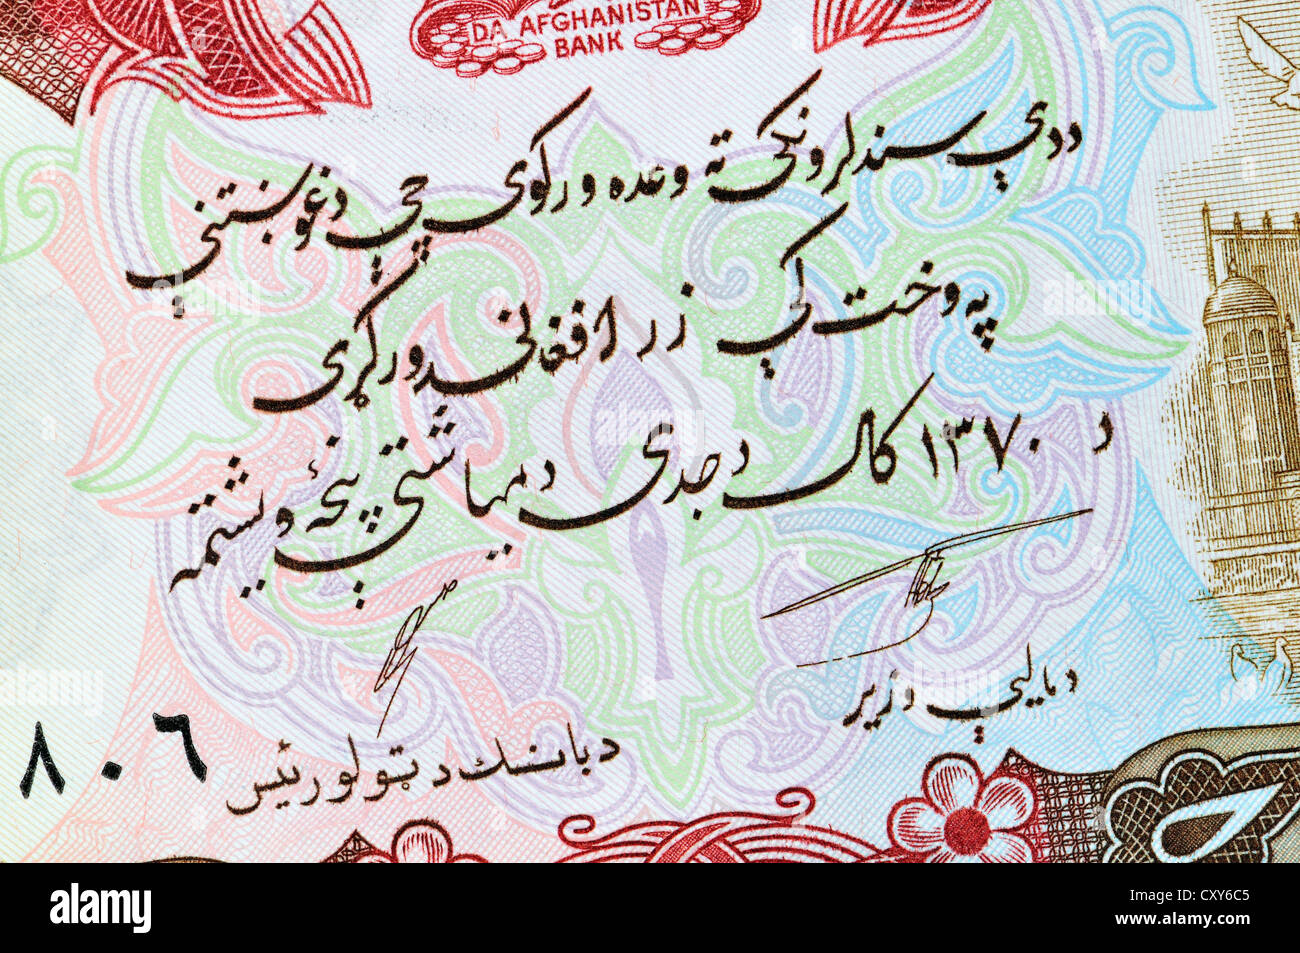 Détail de l'Afghanistan 1000 Afghanis billet, l'écriture arabe Banque D'Images